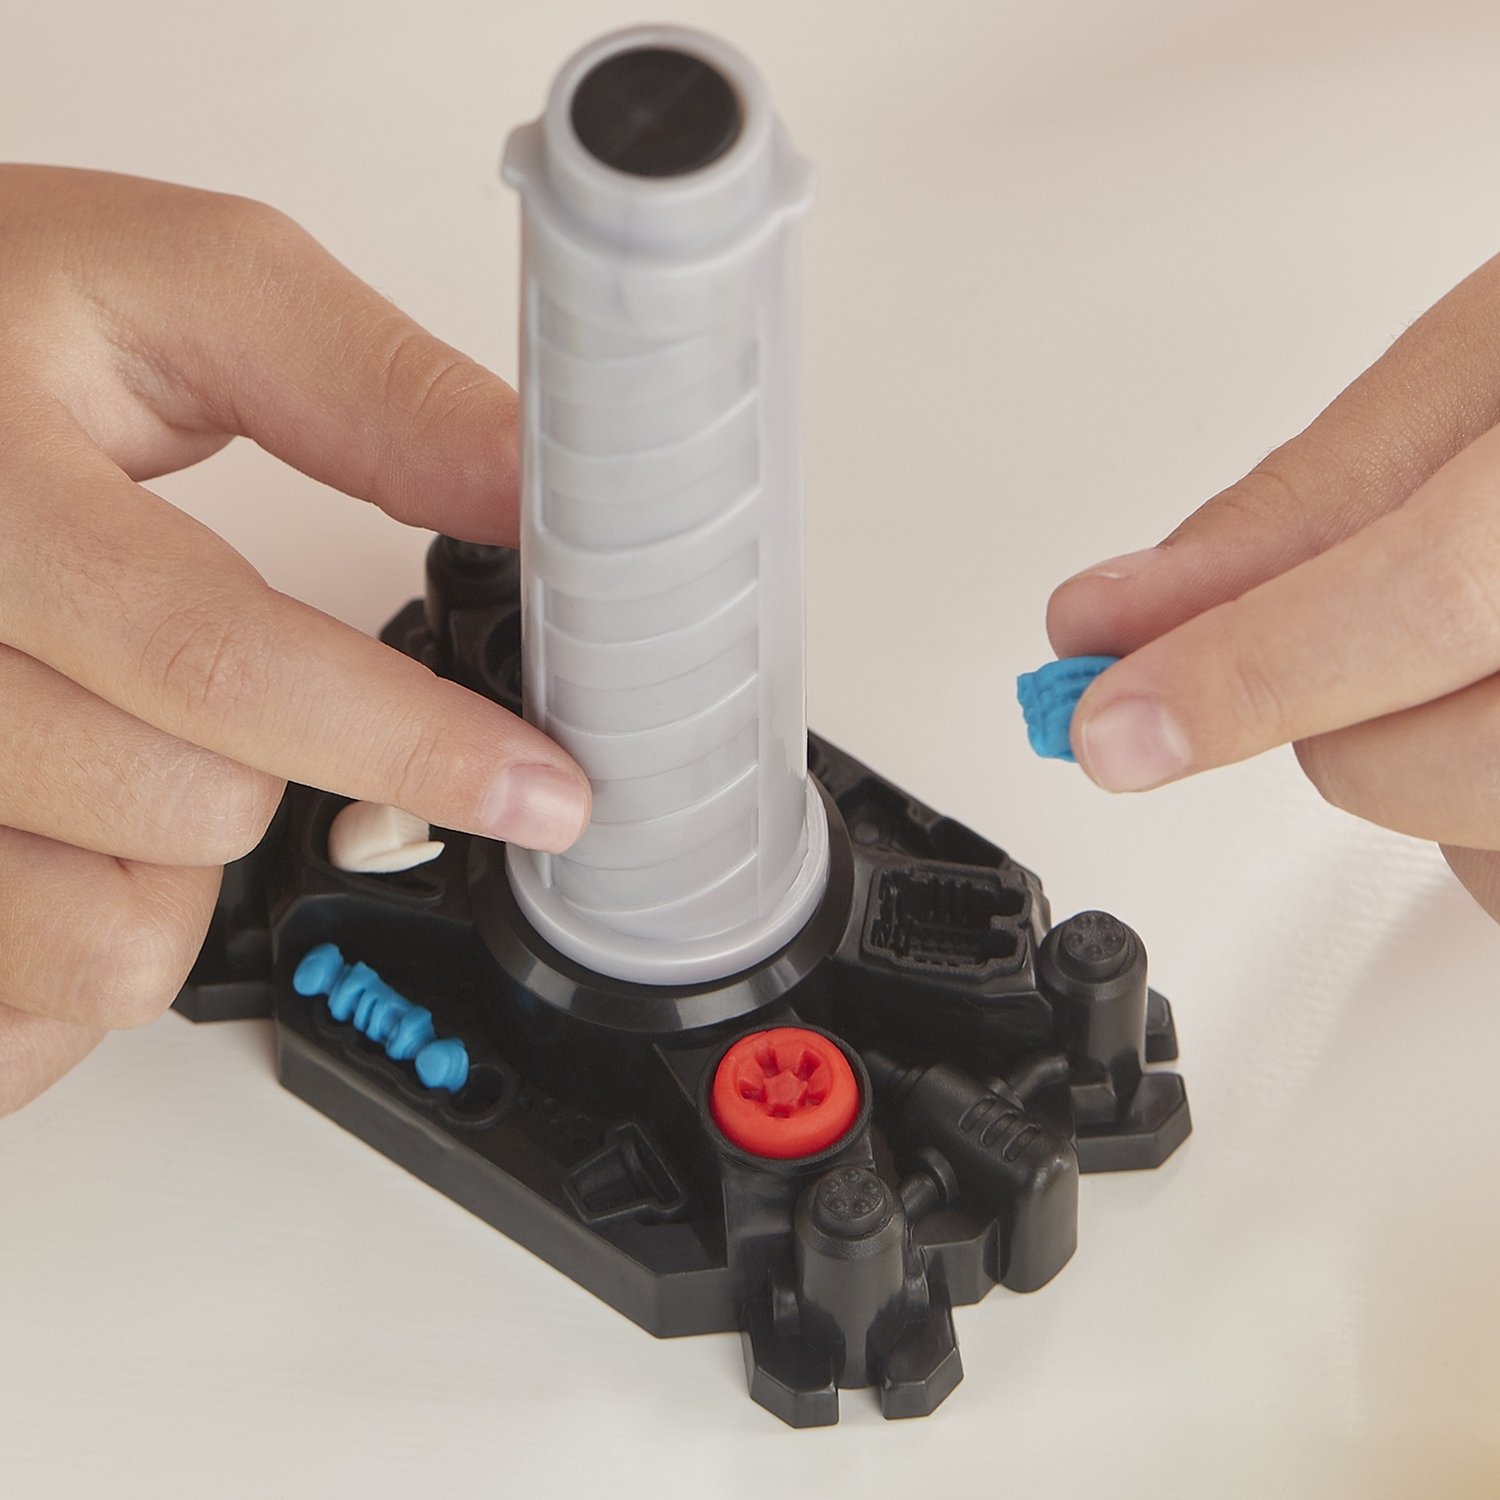 Игровой набор Play-Doh - Wheels Эвакуатор  